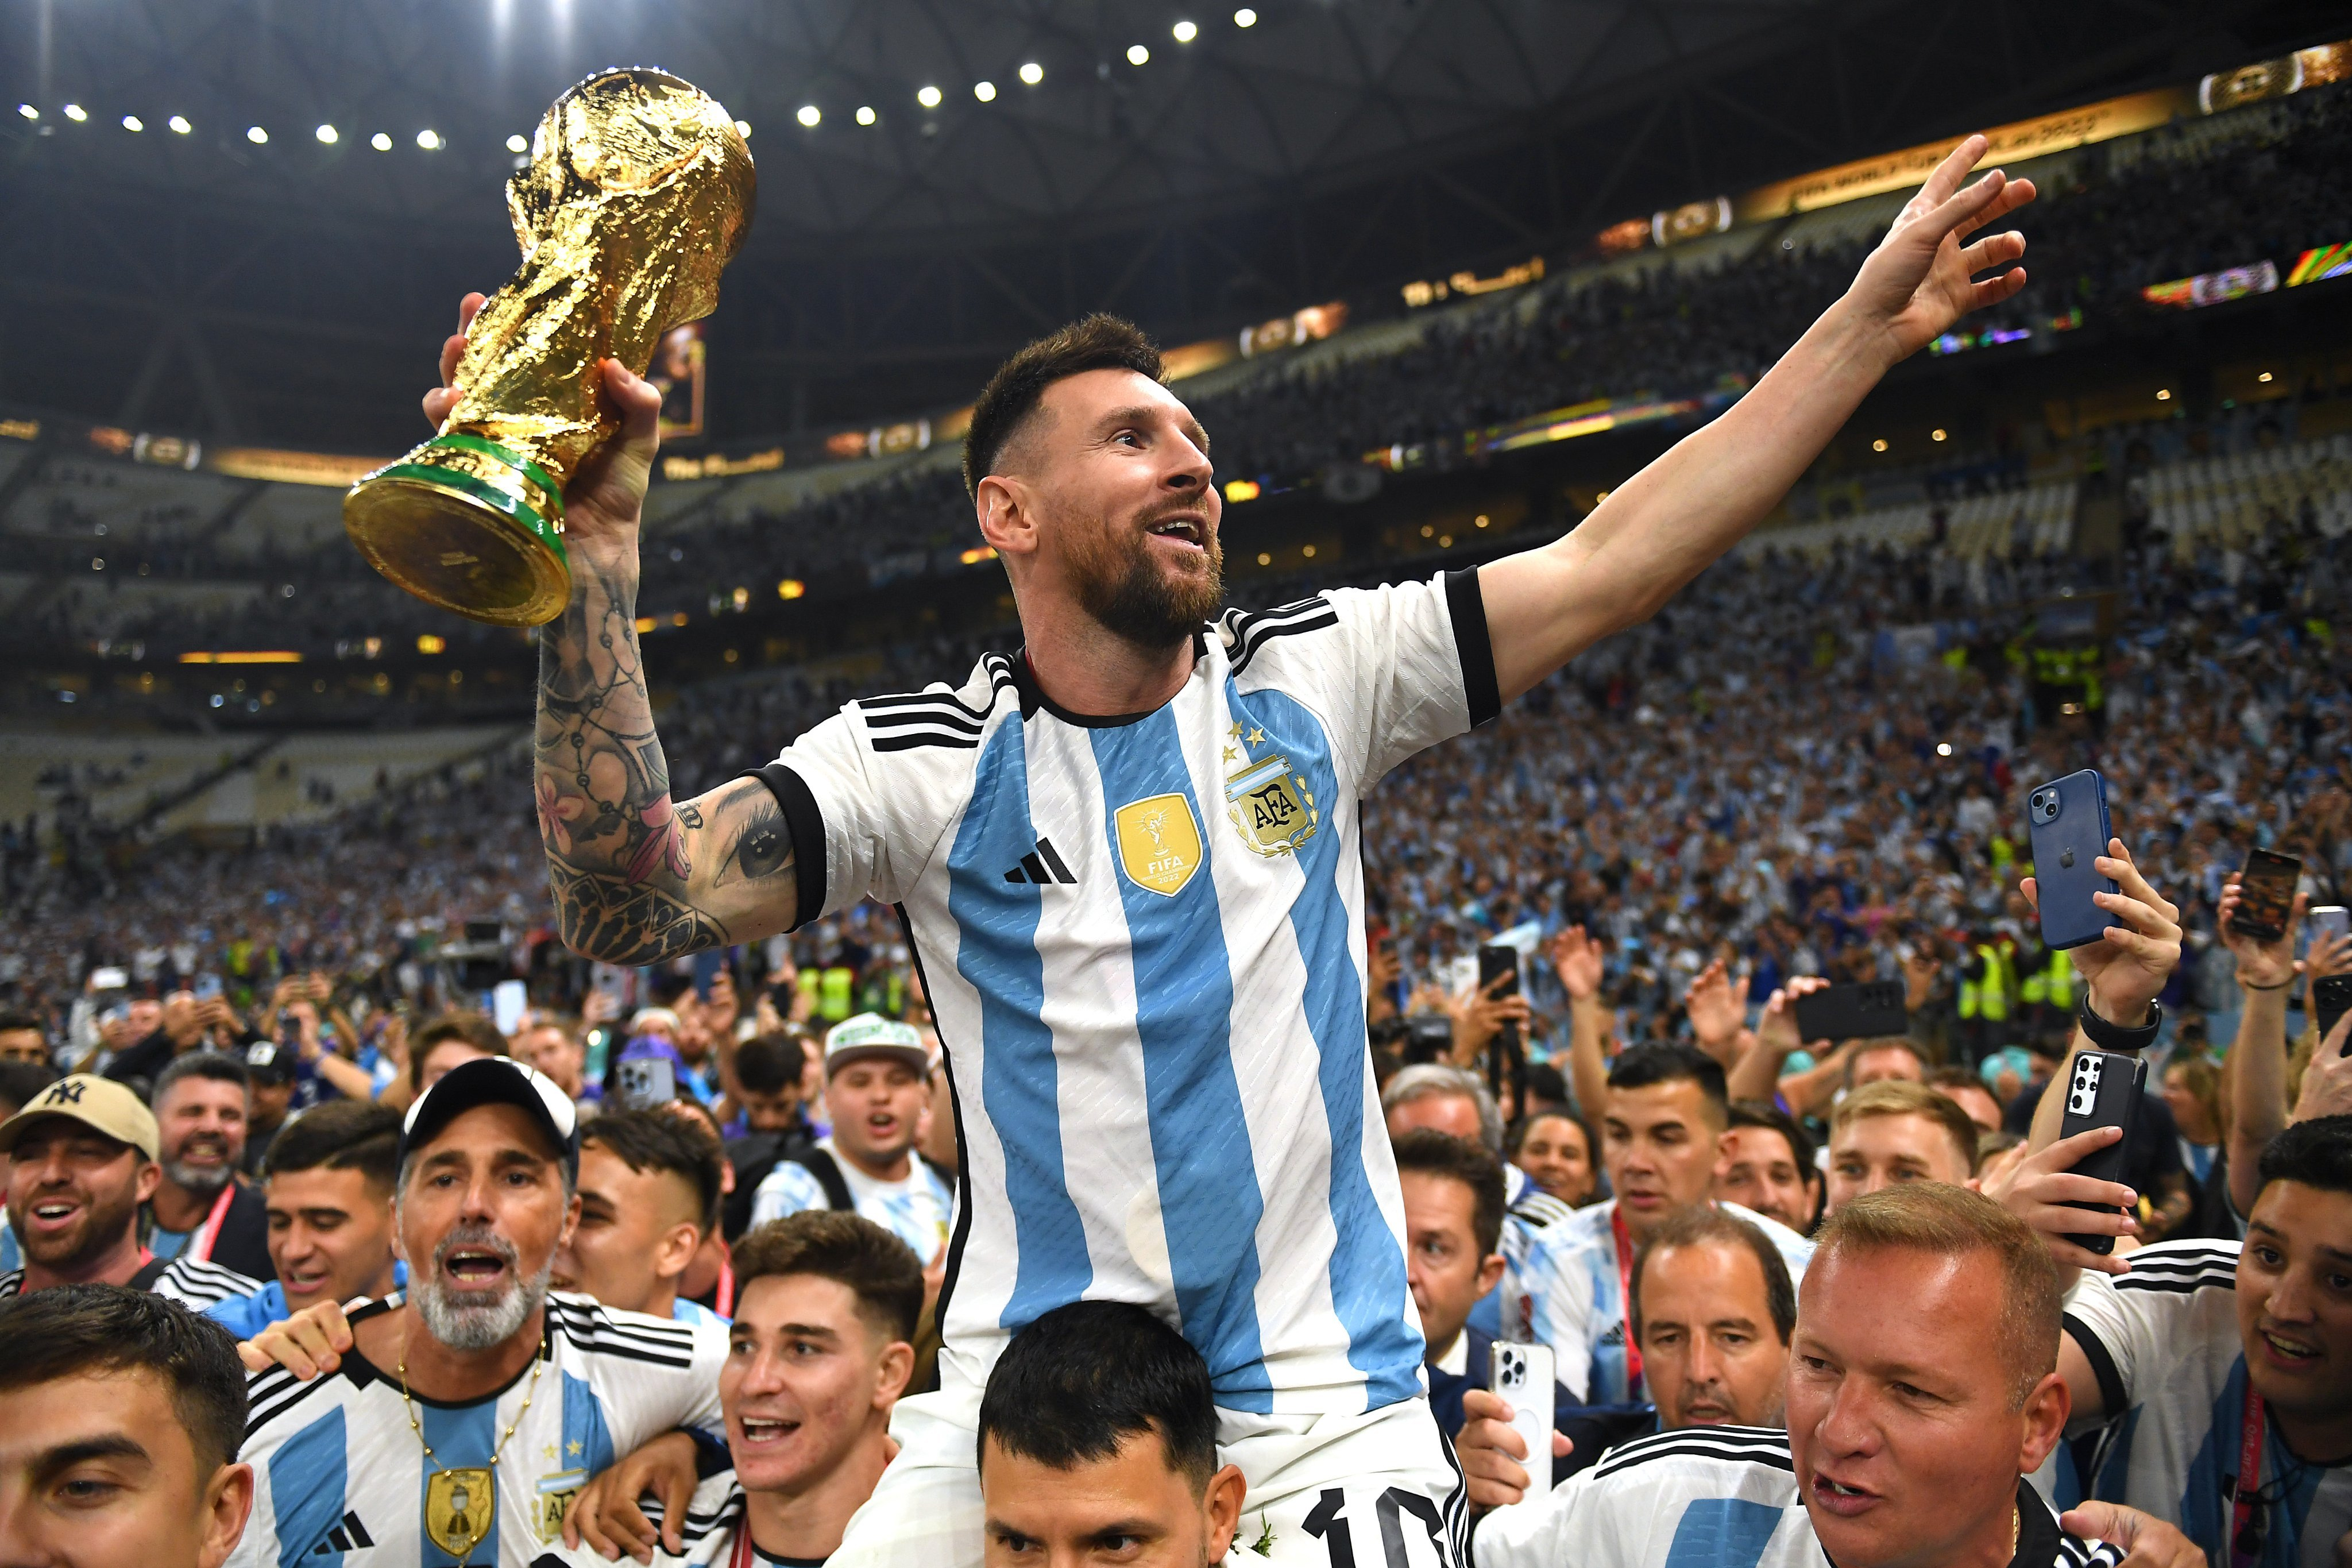 Аргентина выиграла чемпионат мира по футболу! Что об этом думают звезды киберспорта?